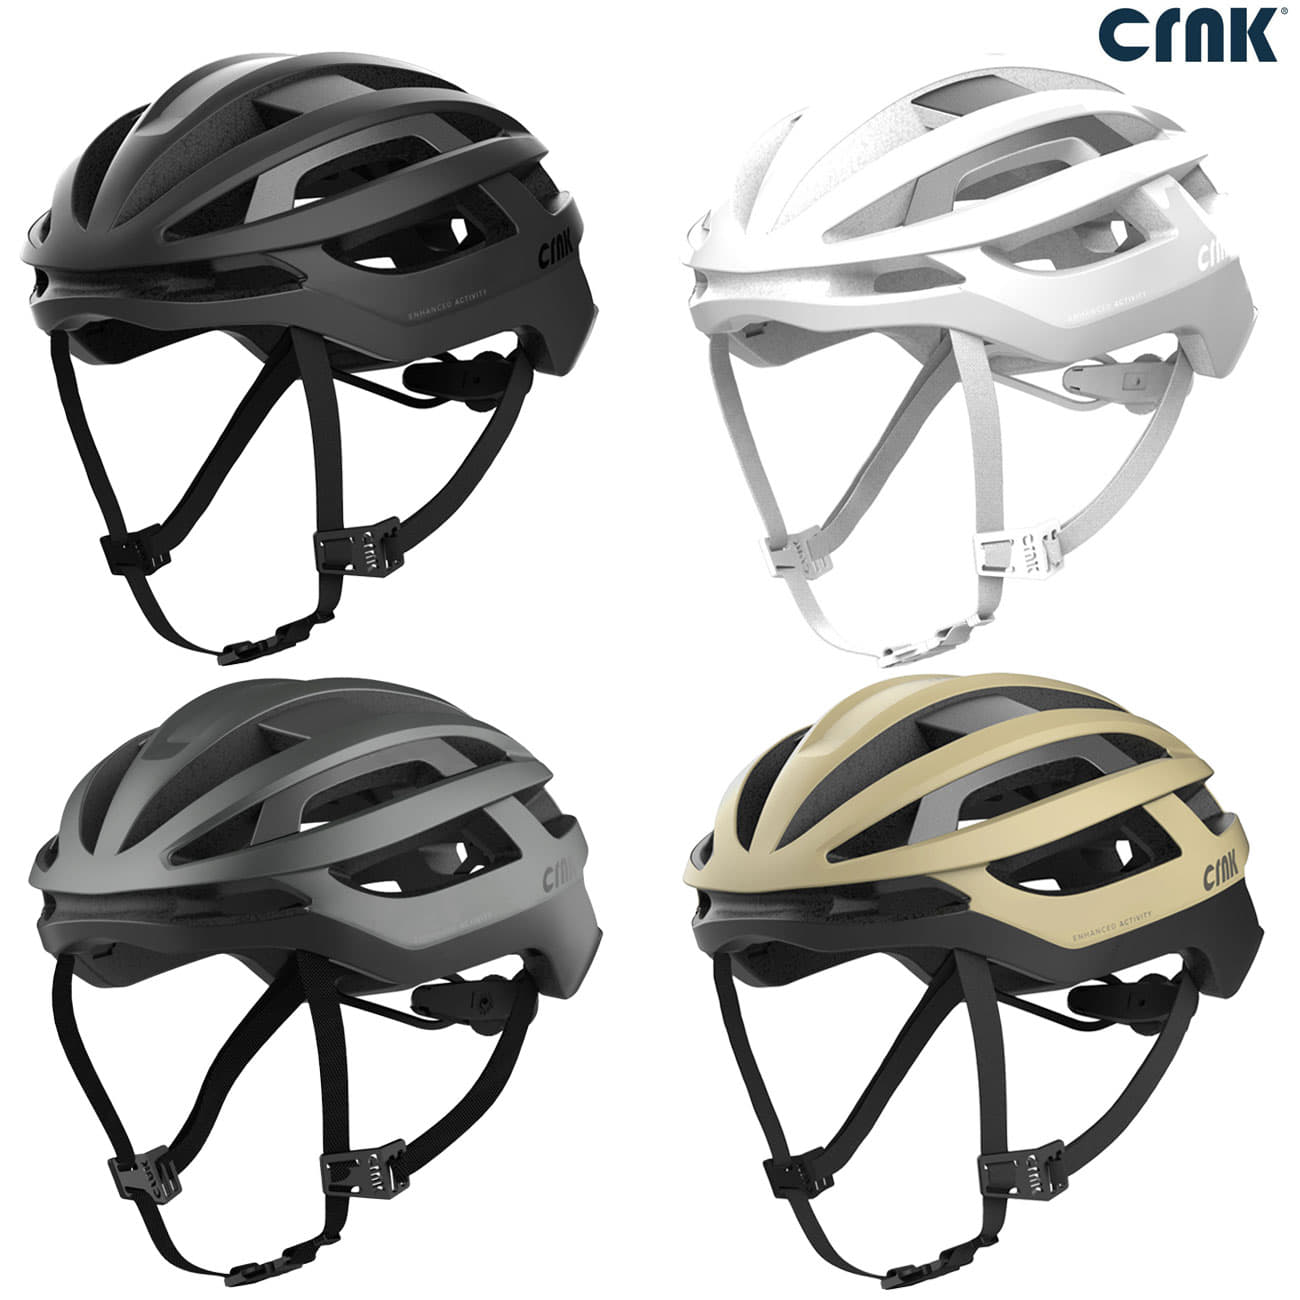 크랭크 헬머하이퍼 아시안핏 보드 인라인 싸이클 라이딩 자전거 로드 헬멧 헬맷 안전모